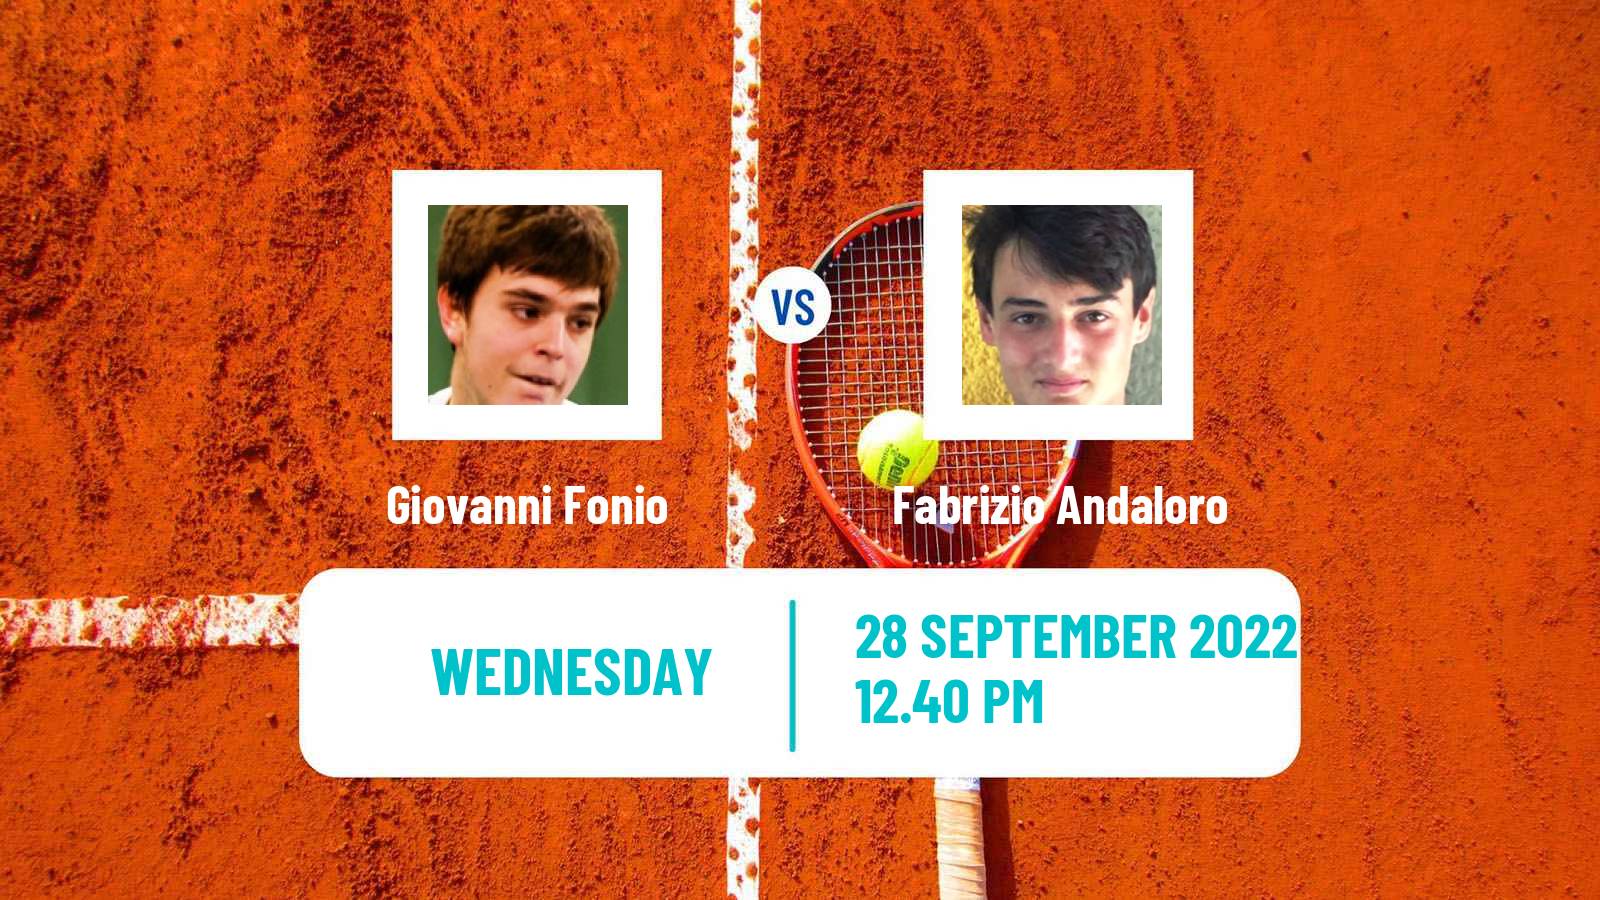 Tennis ITF Tournaments Giovanni Fonio - Fabrizio Andaloro